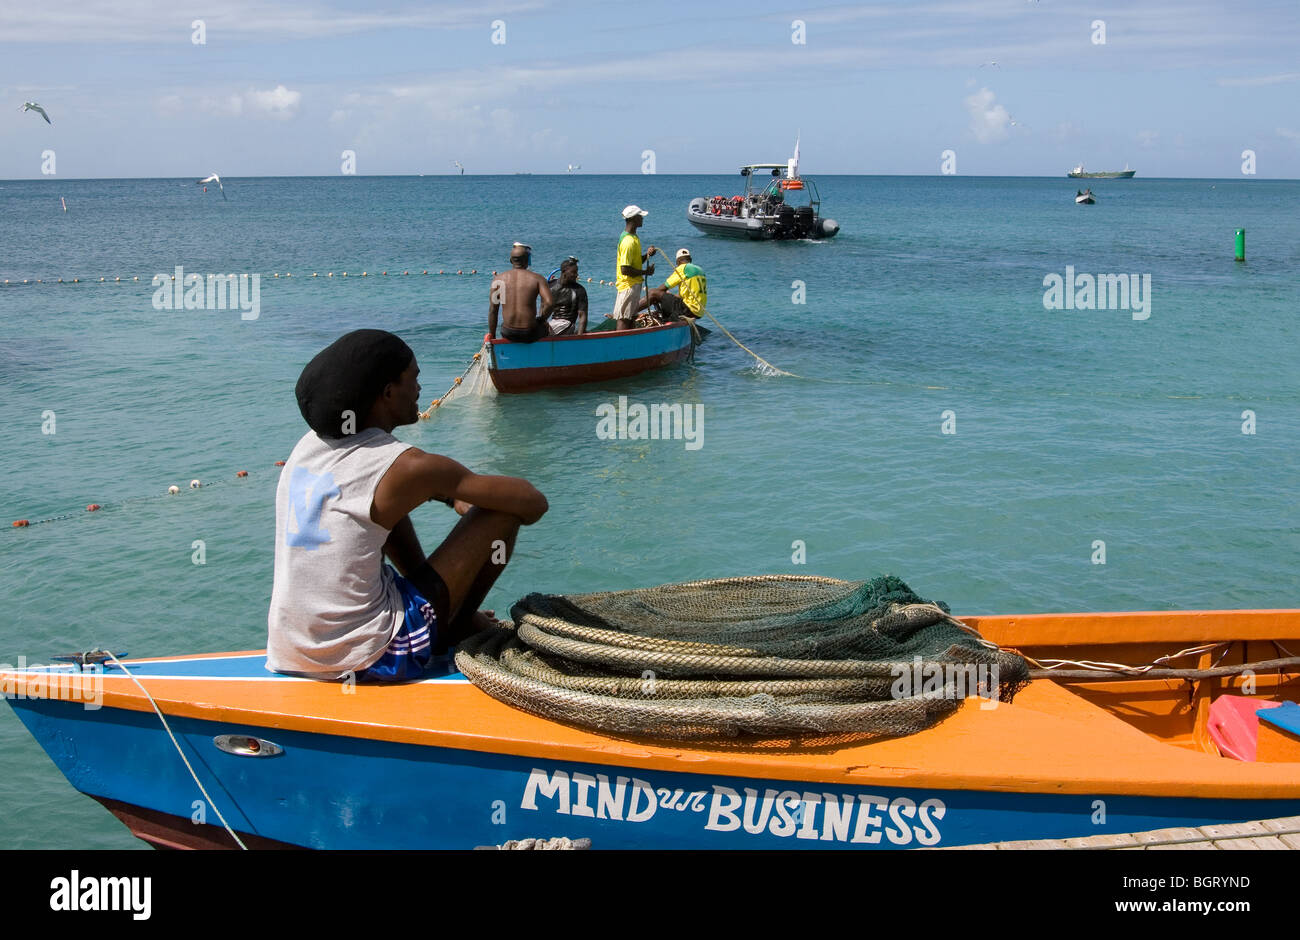 L'esprit Ur Business - Single Figure assis sur un bateau en regardant les pêcheurs dans les Antilles. Banque D'Images